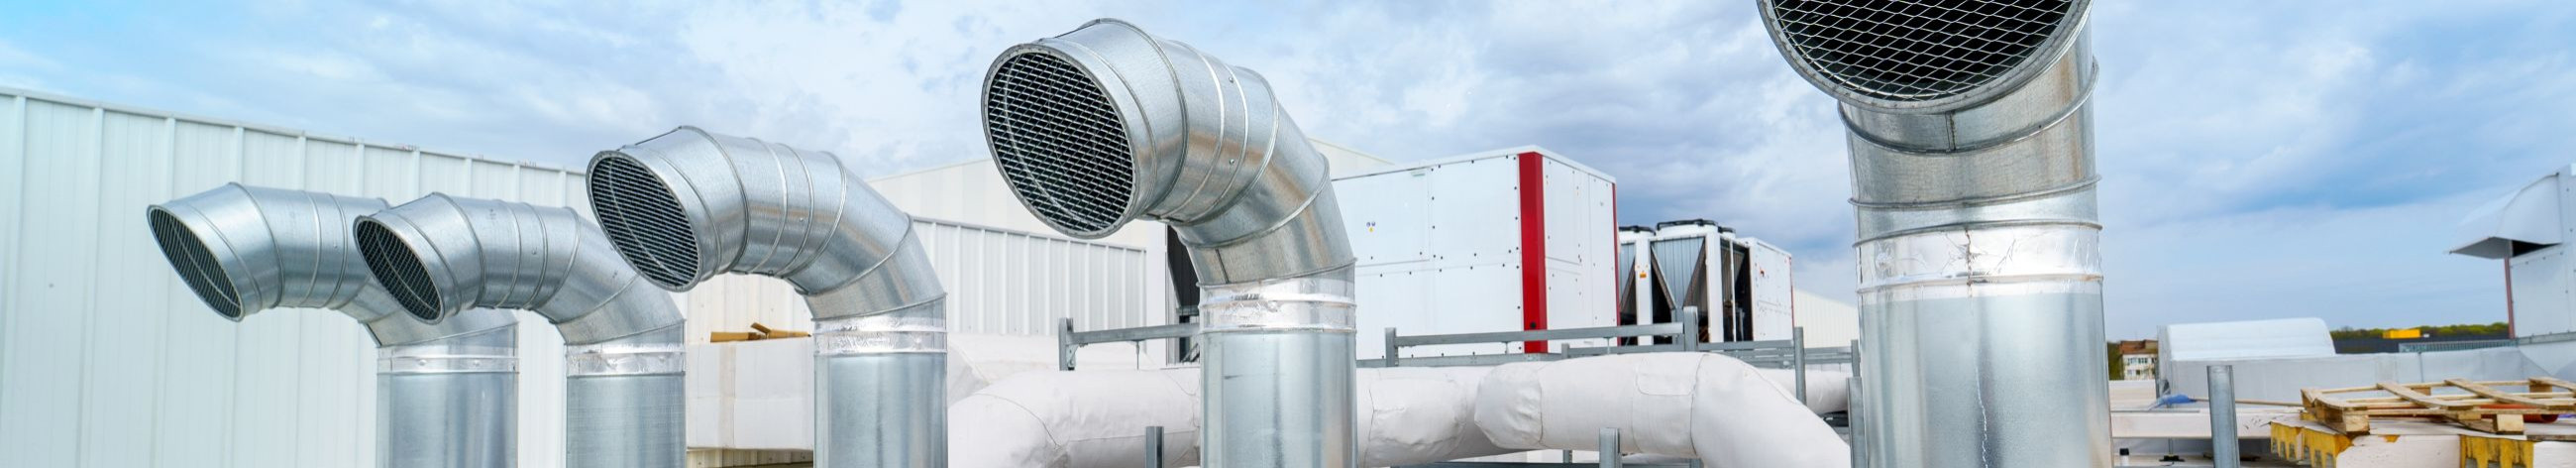 Pakume terviklikke ventilatsioonilahendusi, tagades puhta ja tervisliku sisekliima nii era- kui ka äriklientidele.